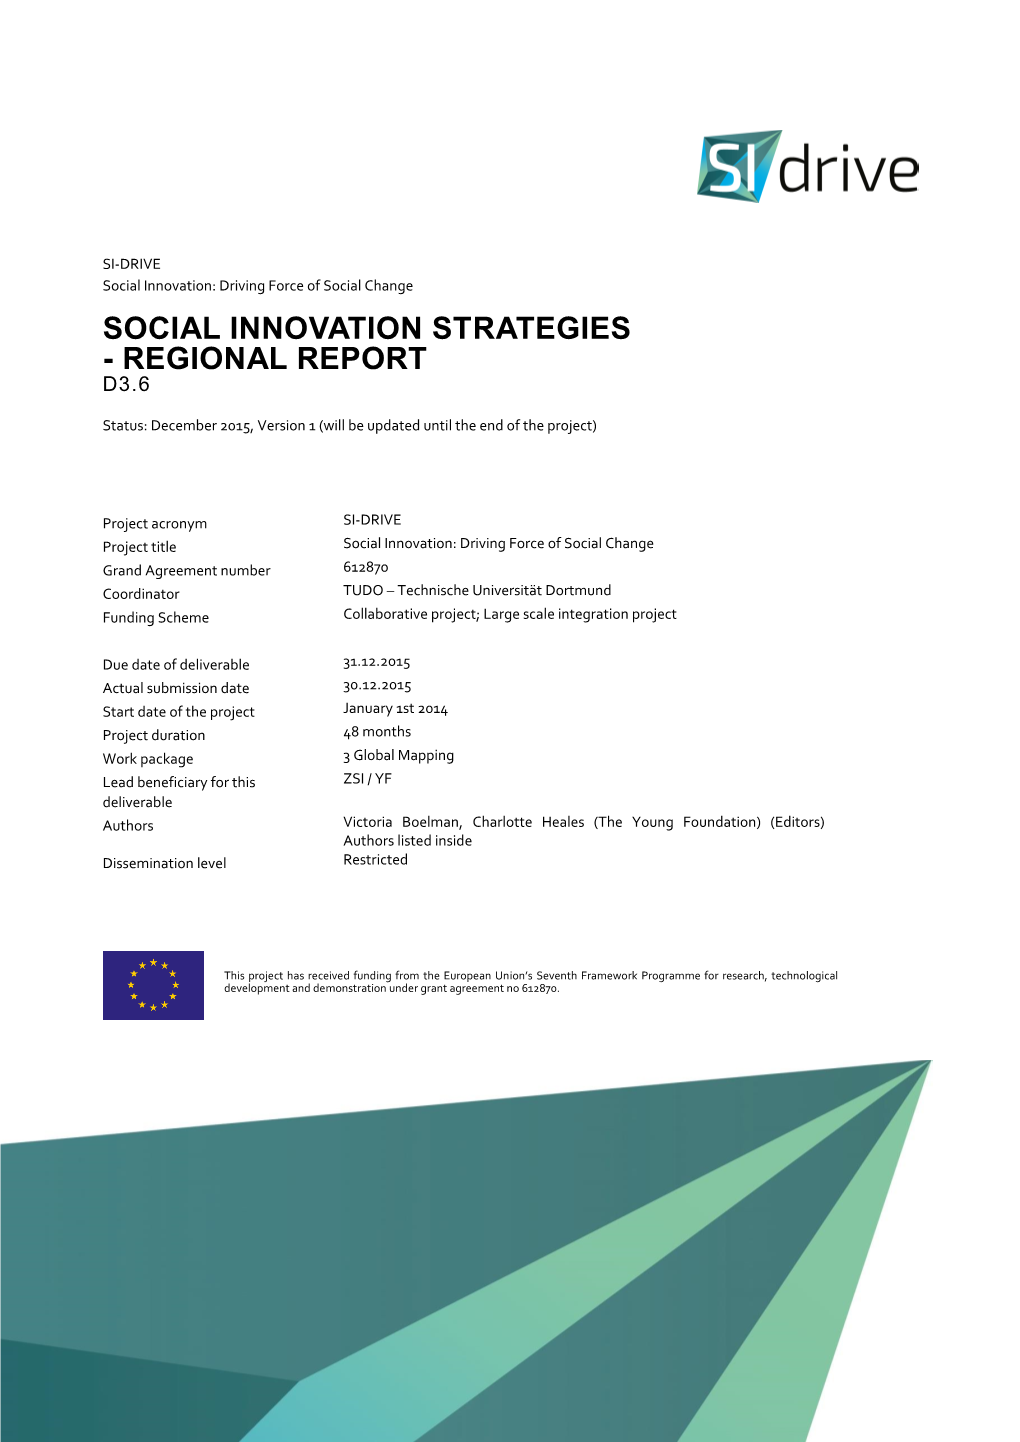 D3.6 Social Innovation Strategies: Regional Report